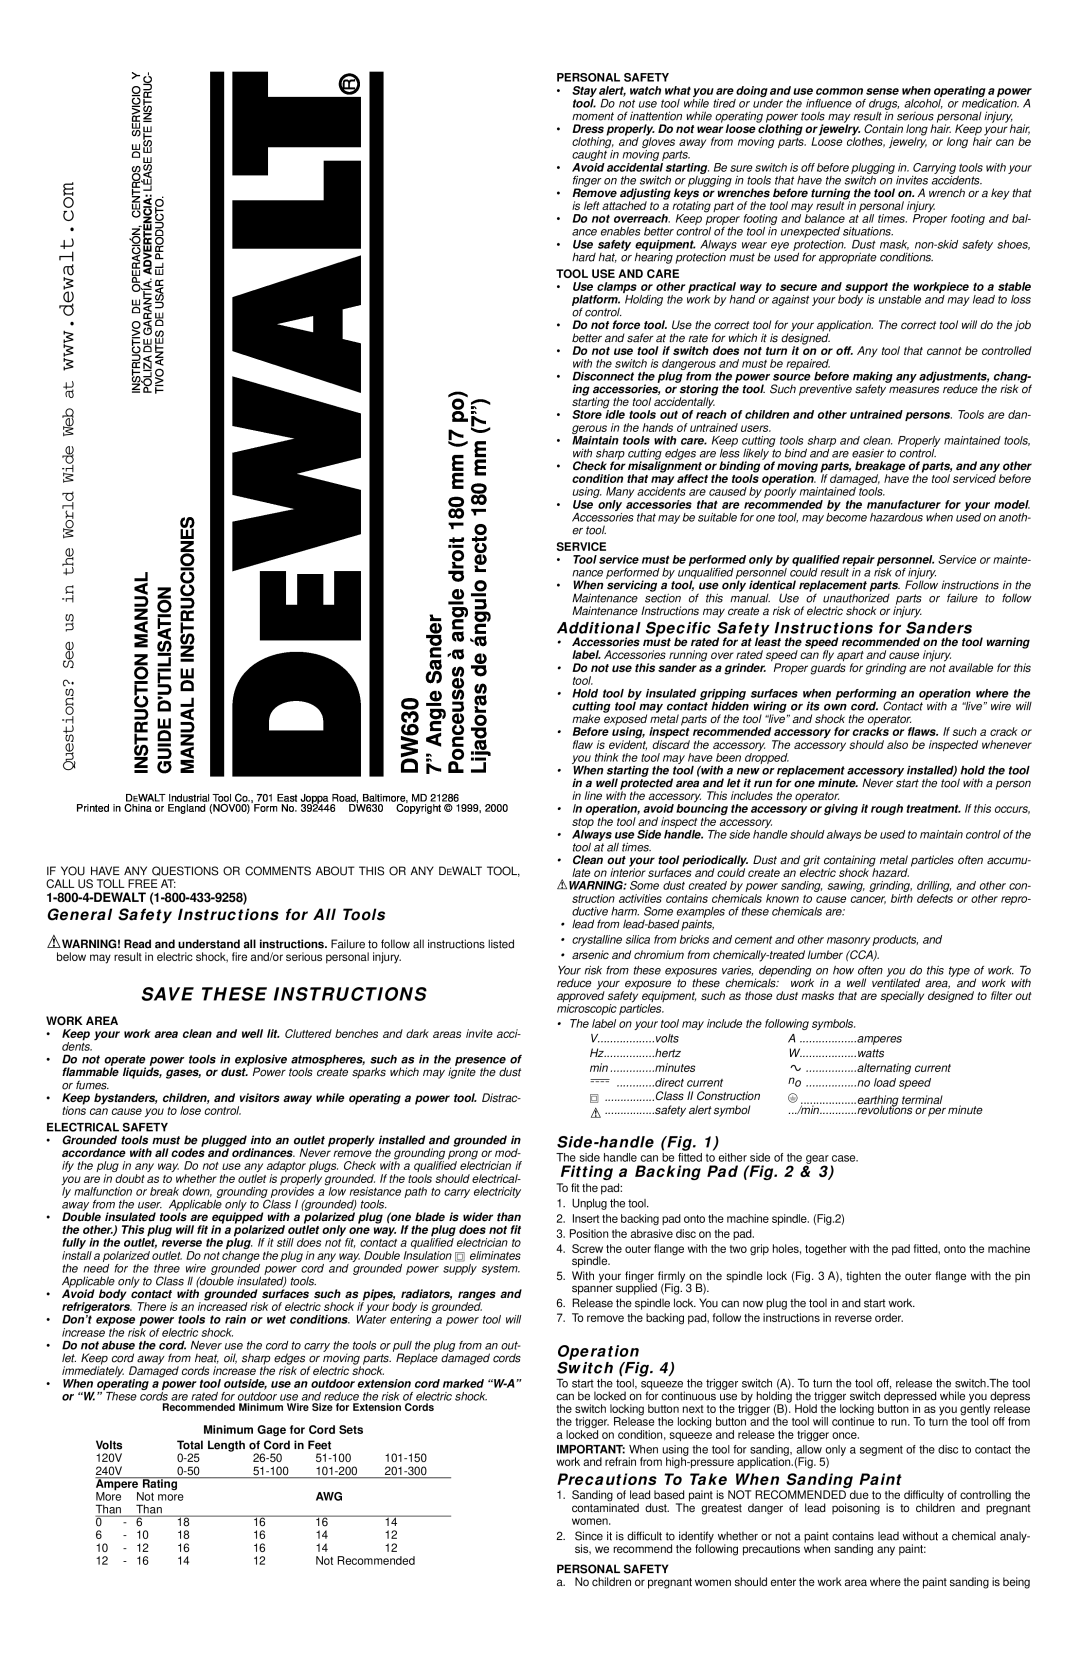 Epson DW630 instruction manual Save These Instructions, Guide Dutilisation Manual De Instrucciones, Dewalt 